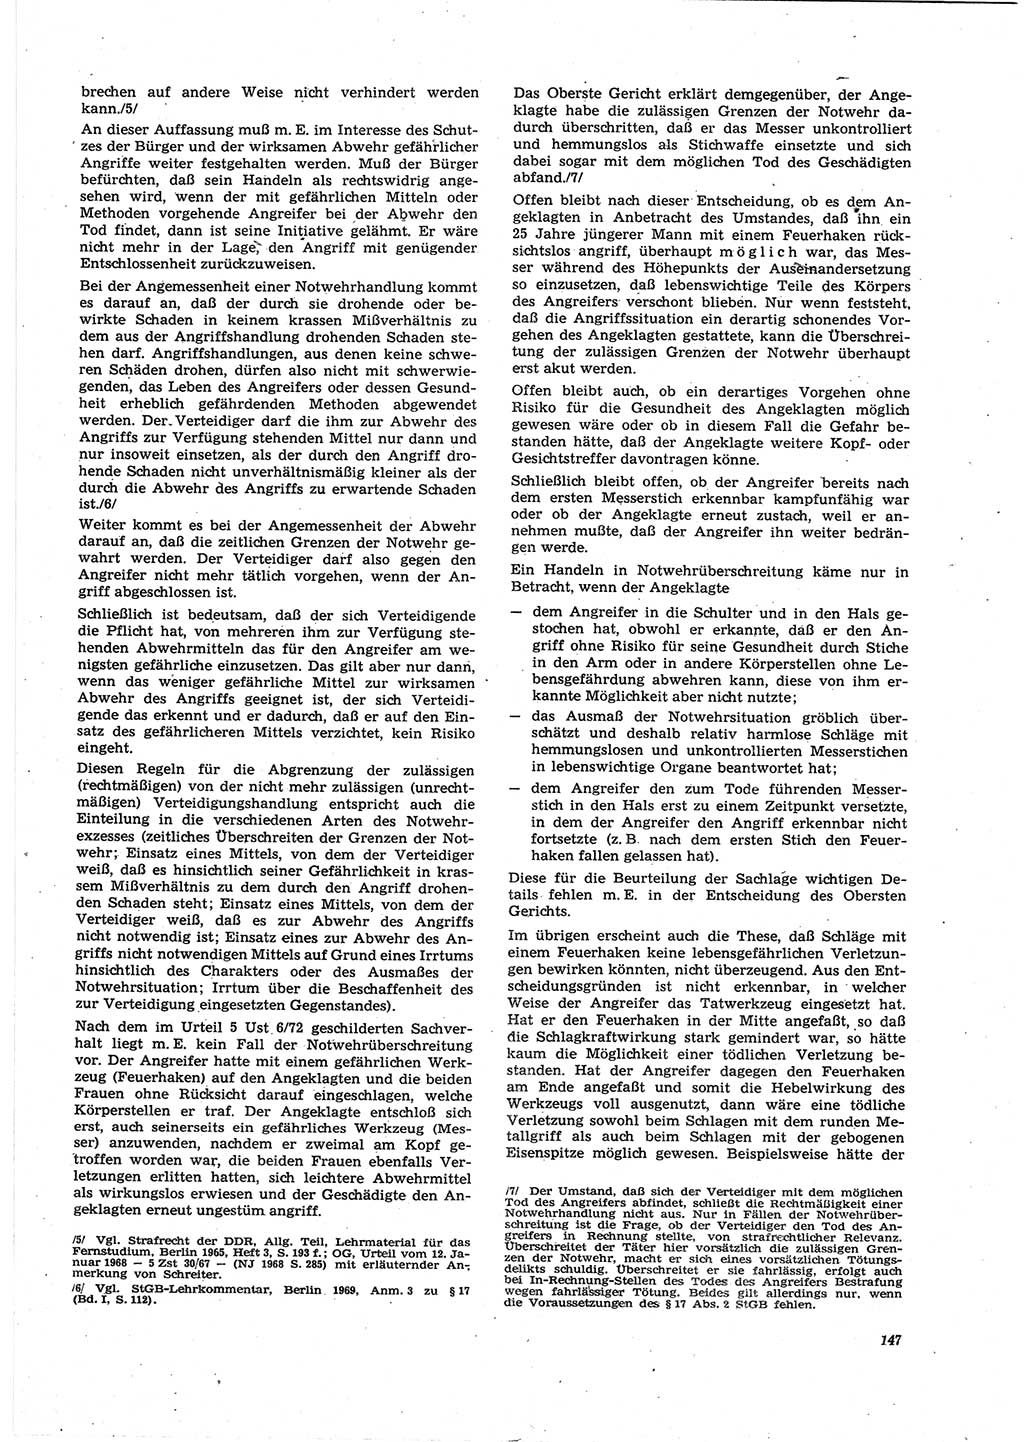 Neue Justiz (NJ), Zeitschrift für Recht und Rechtswissenschaft [Deutsche Demokratische Republik (DDR)], 27. Jahrgang 1973, Seite 147 (NJ DDR 1973, S. 147)